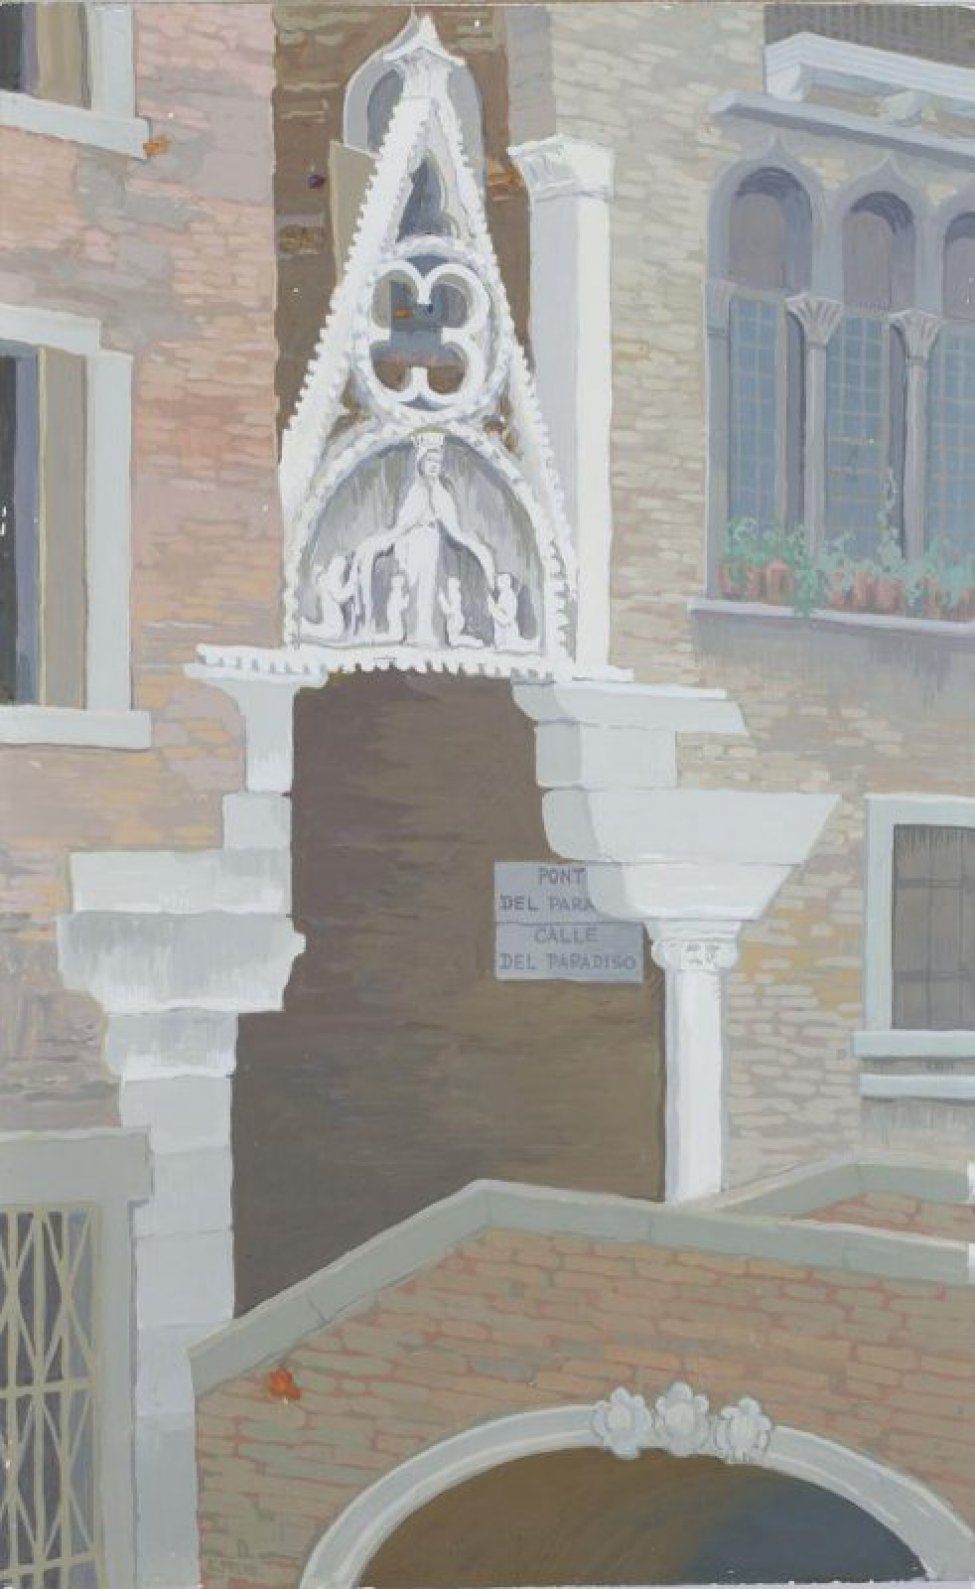 Изображен фрагмент гоитческого собора; над входом светлая скульптурная композиция. Две вывески с текстом: "PONT DEL PARA", "CALLE DEL PARADISO".